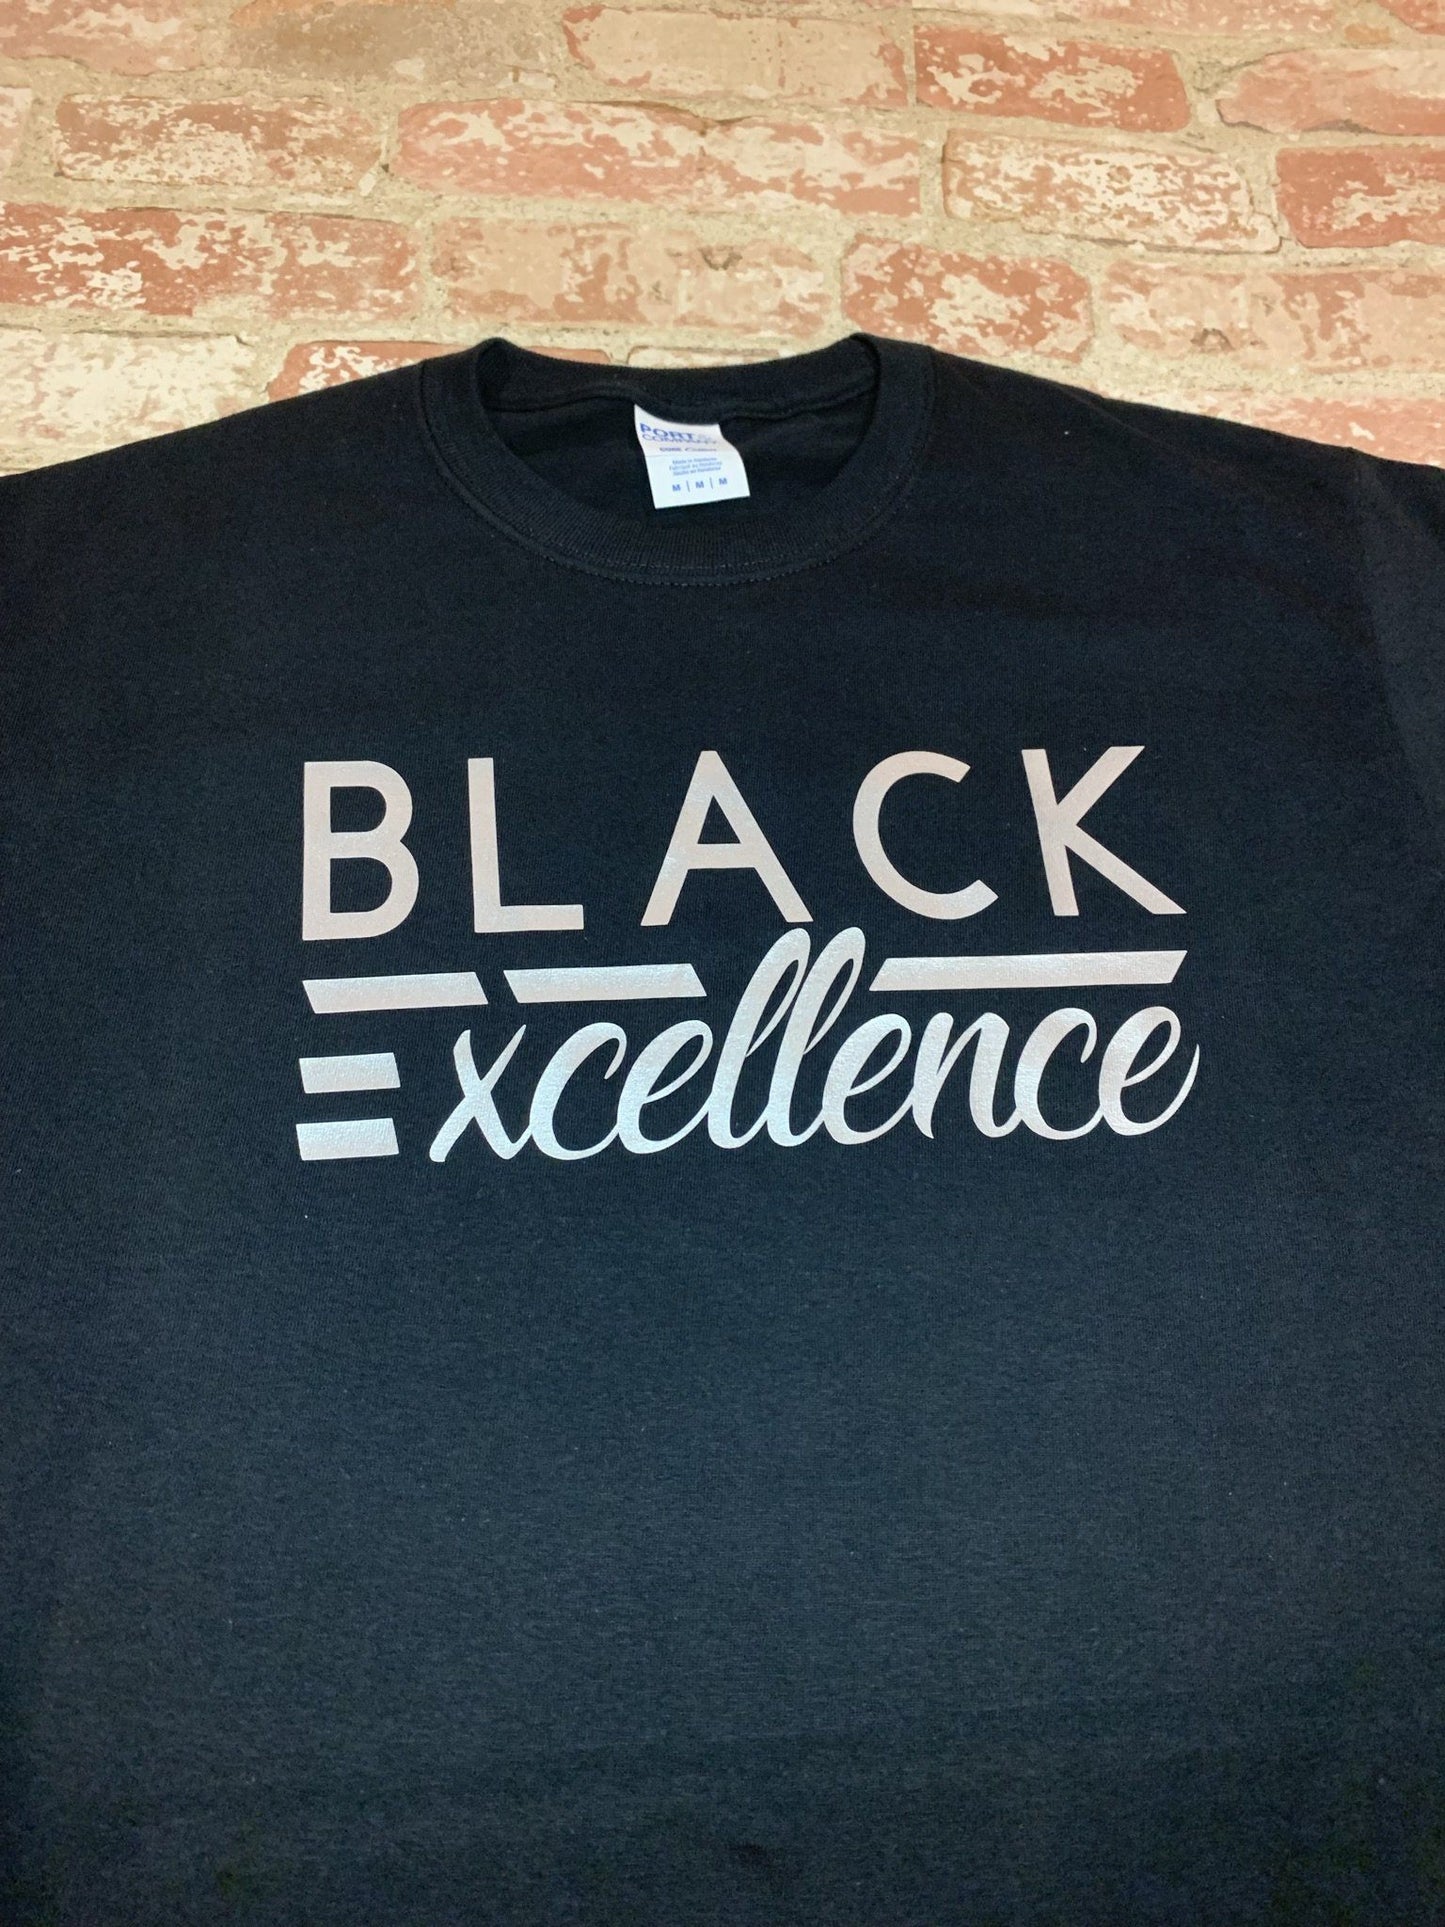 Black Excellence T-Shirt Shirt B1ack By Design LLC 